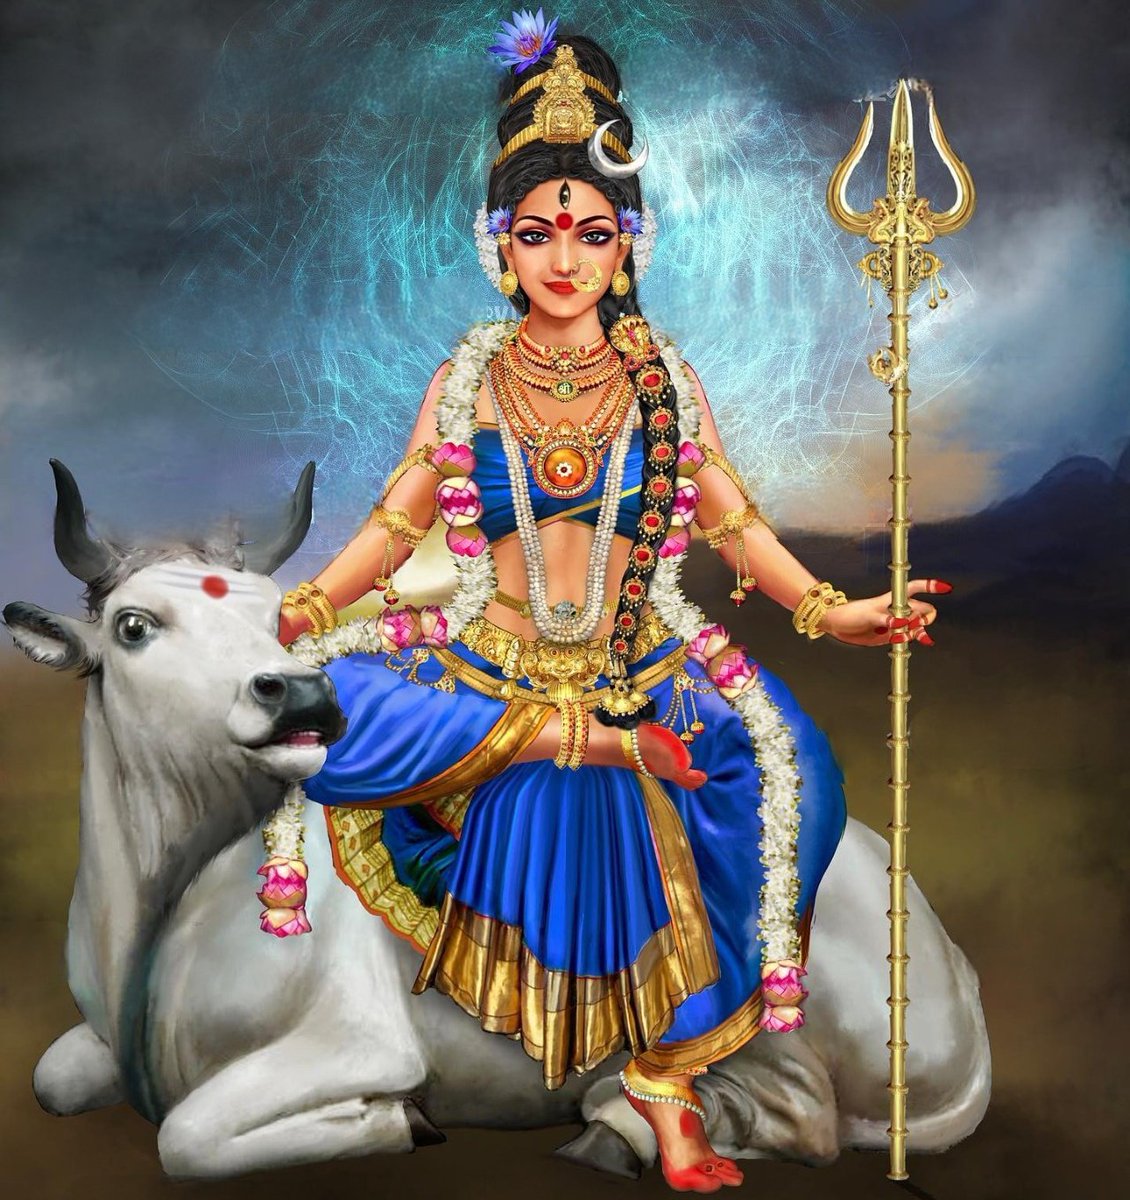 चैत्र शुक्ल प्रतिपदा एवं नवरात्रि के प्रथम दिवस को भगवती माँ शैलजा को कोटि कोटि वंदन सहित सभी को हिंदू नववर्ष २०८१ की हार्दिक शुभकामनाएं 🙏🚩